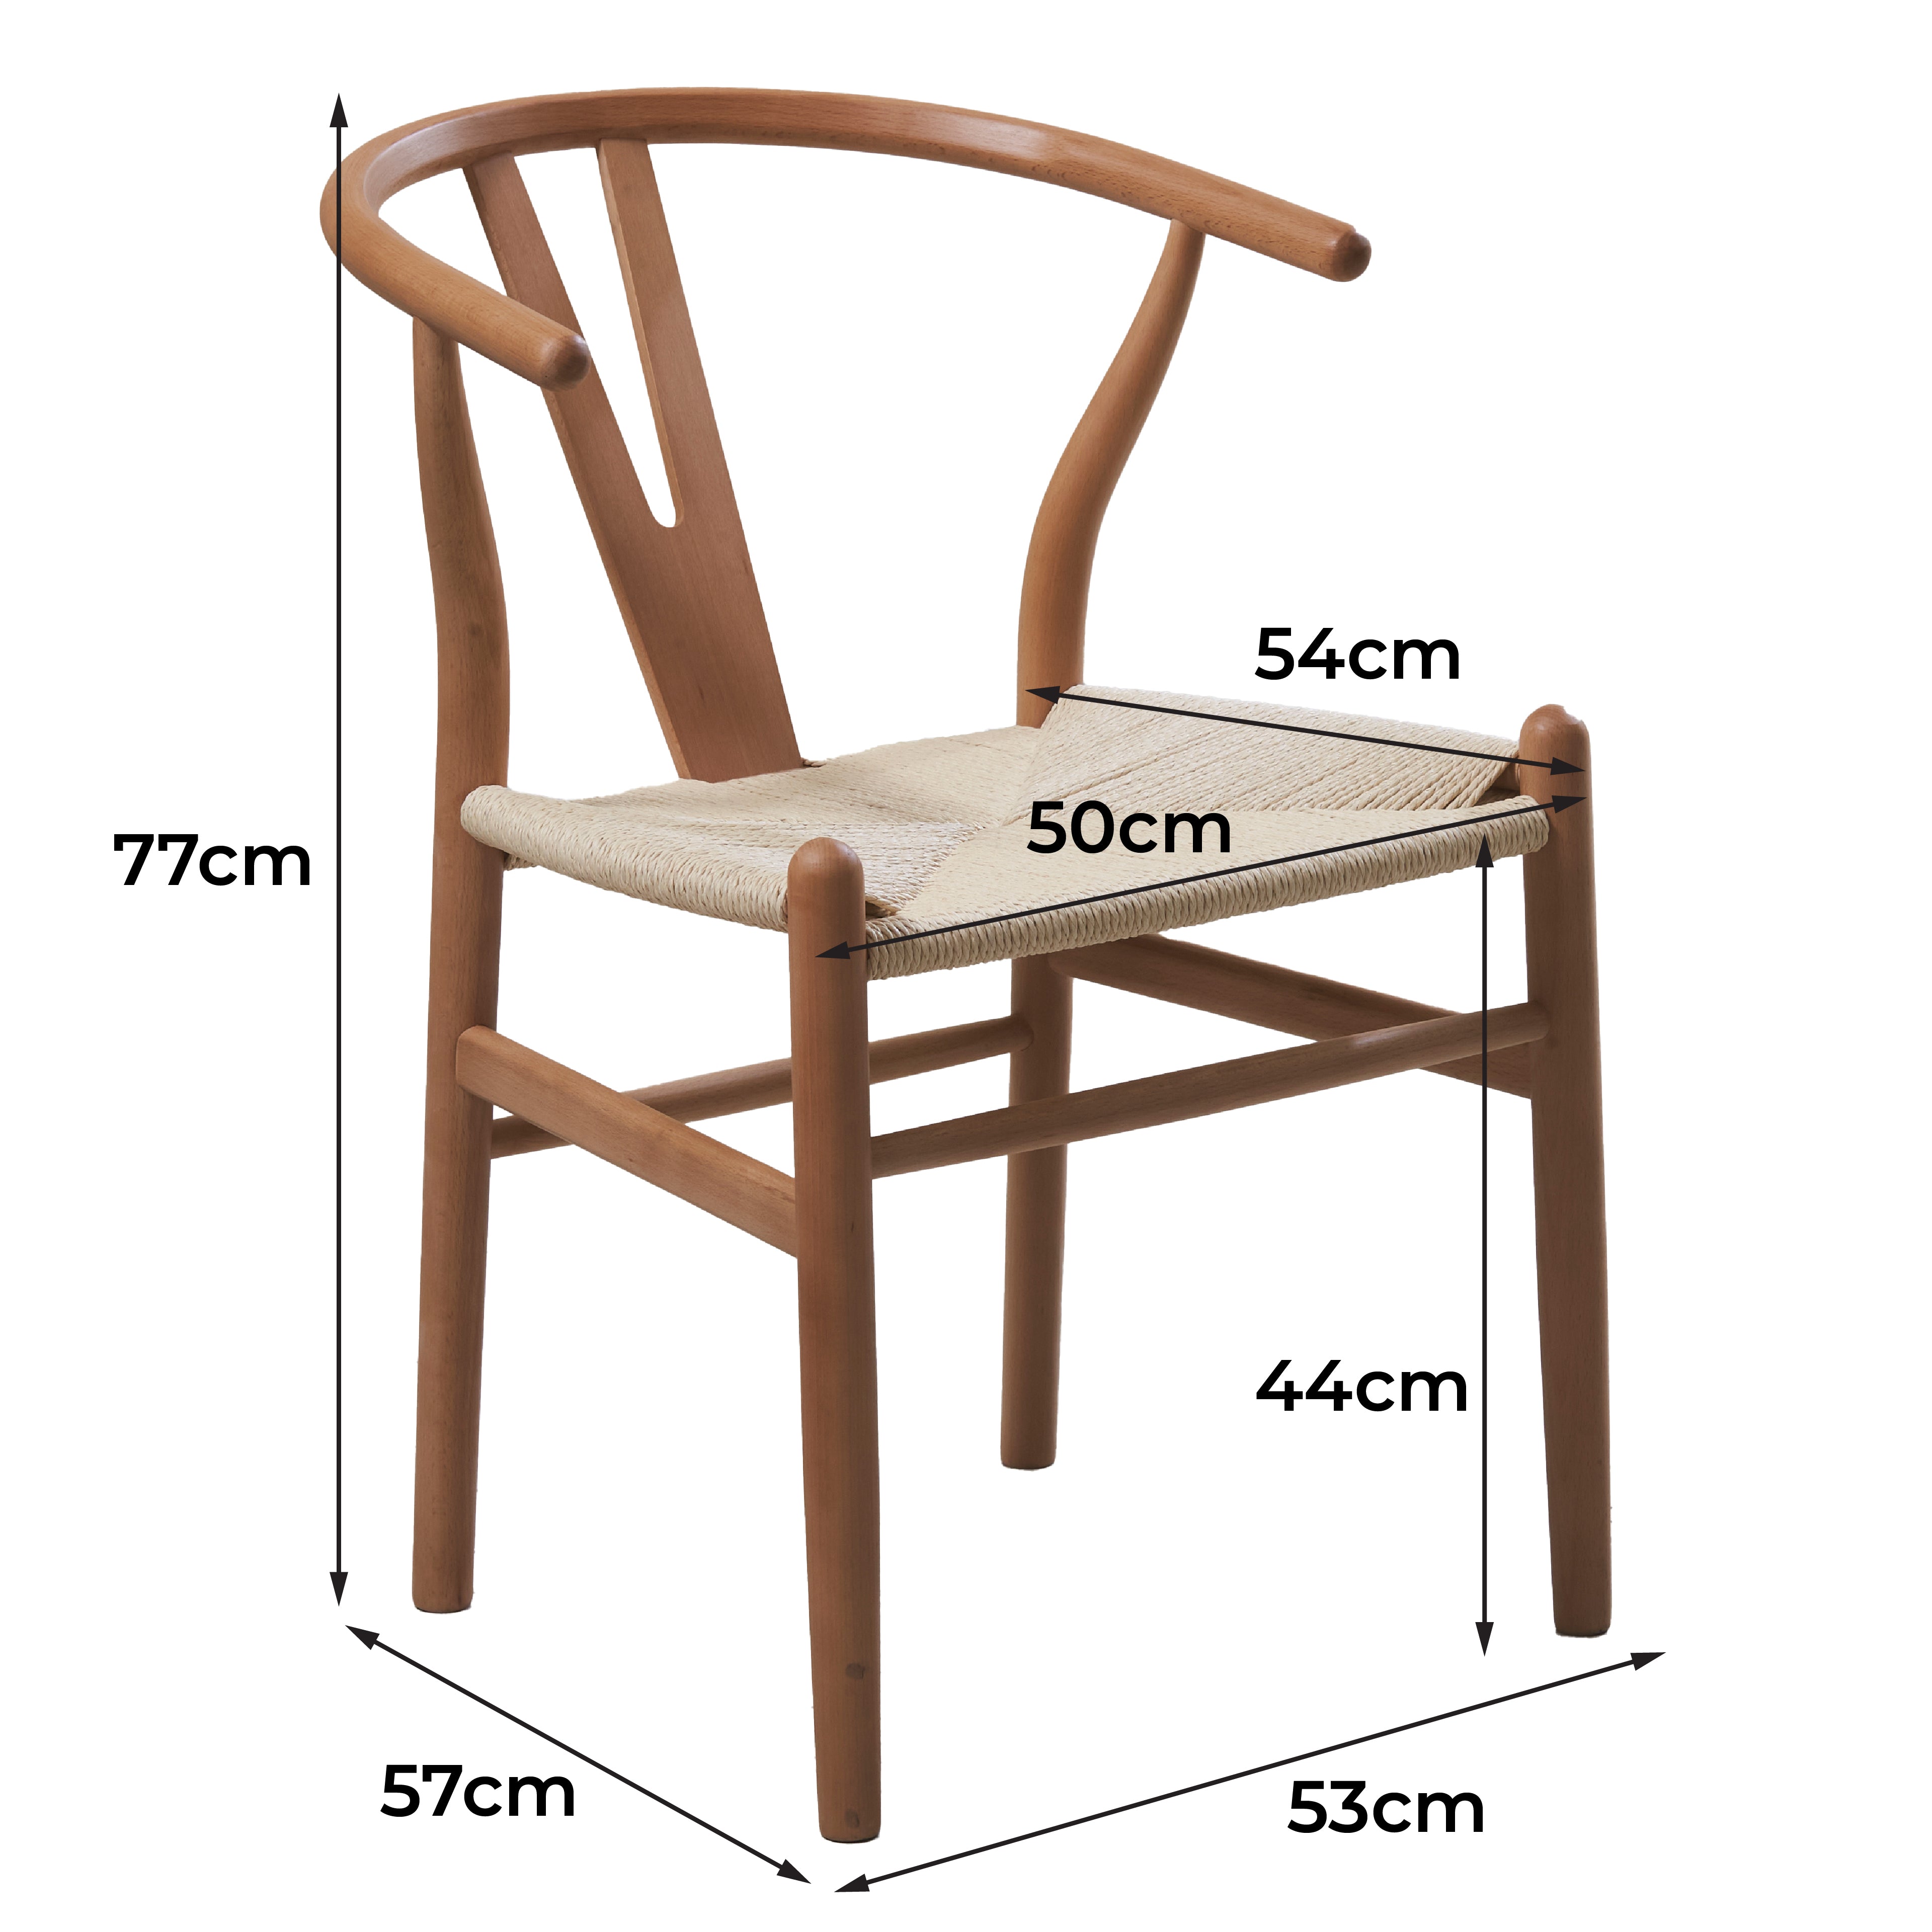 Natural Hans Wegner Replica Wishbone Chairs (Set of 2)